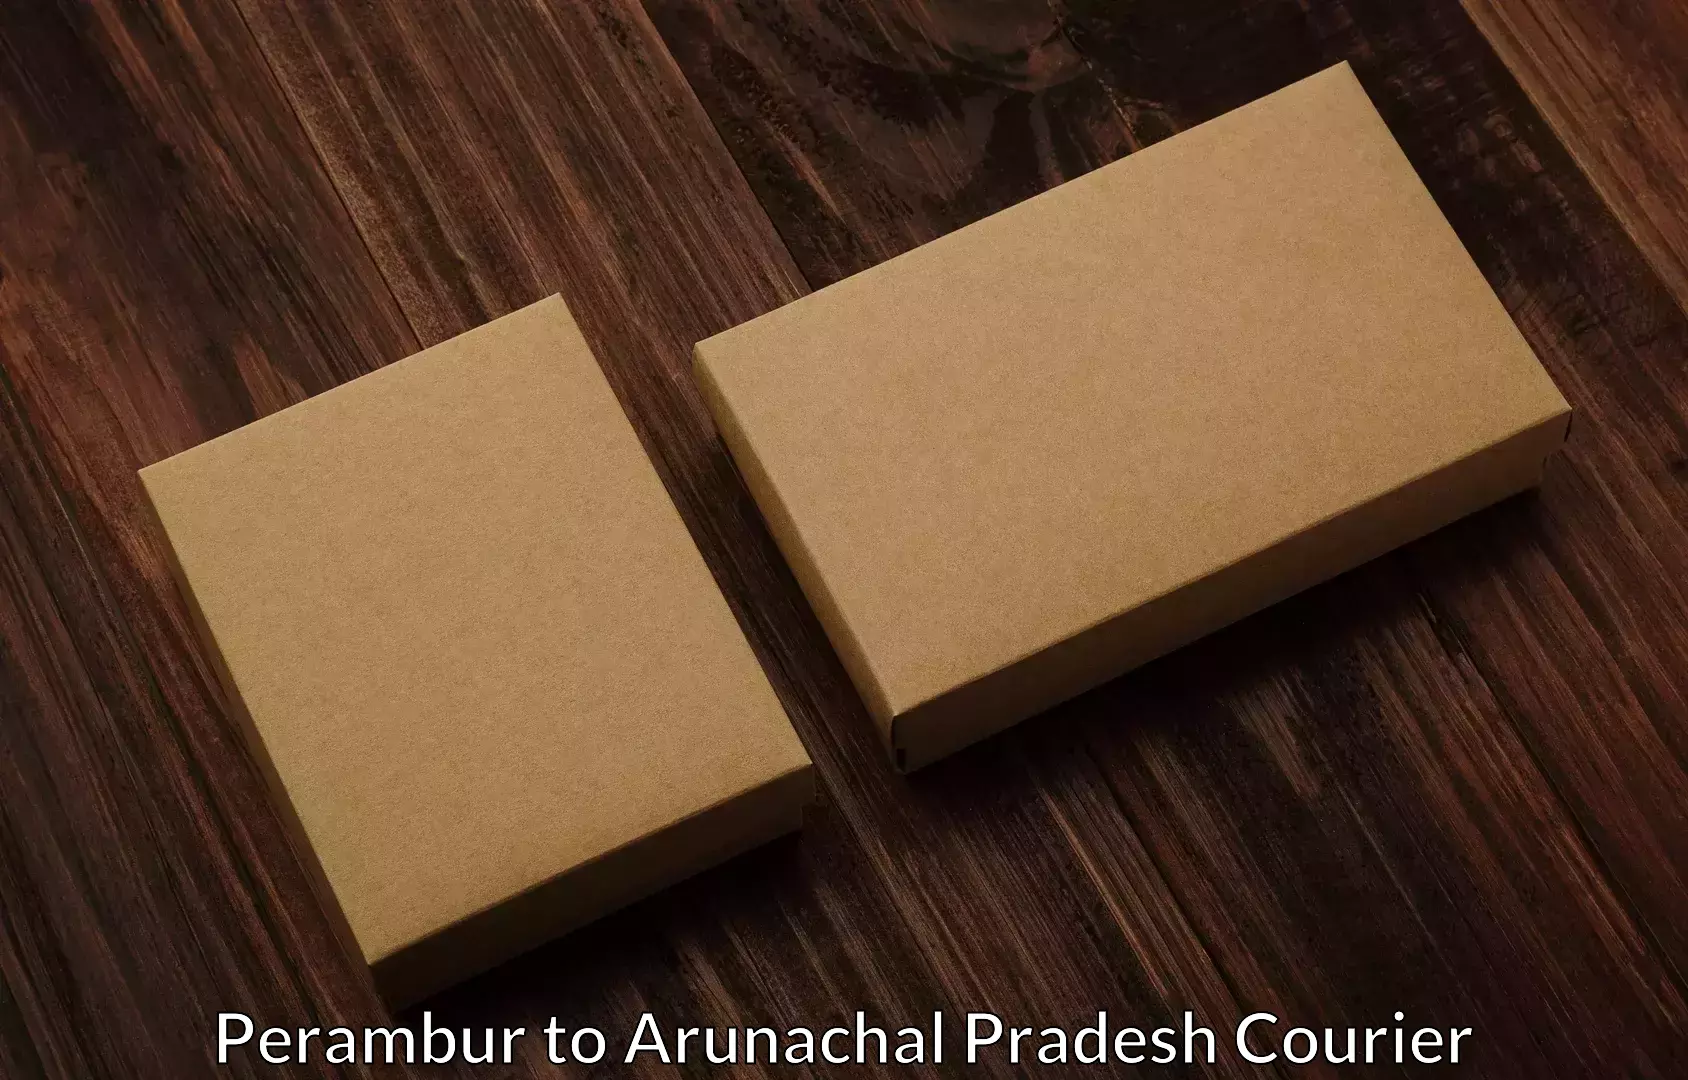 Furniture moving plans Perambur to Arunachal Pradesh